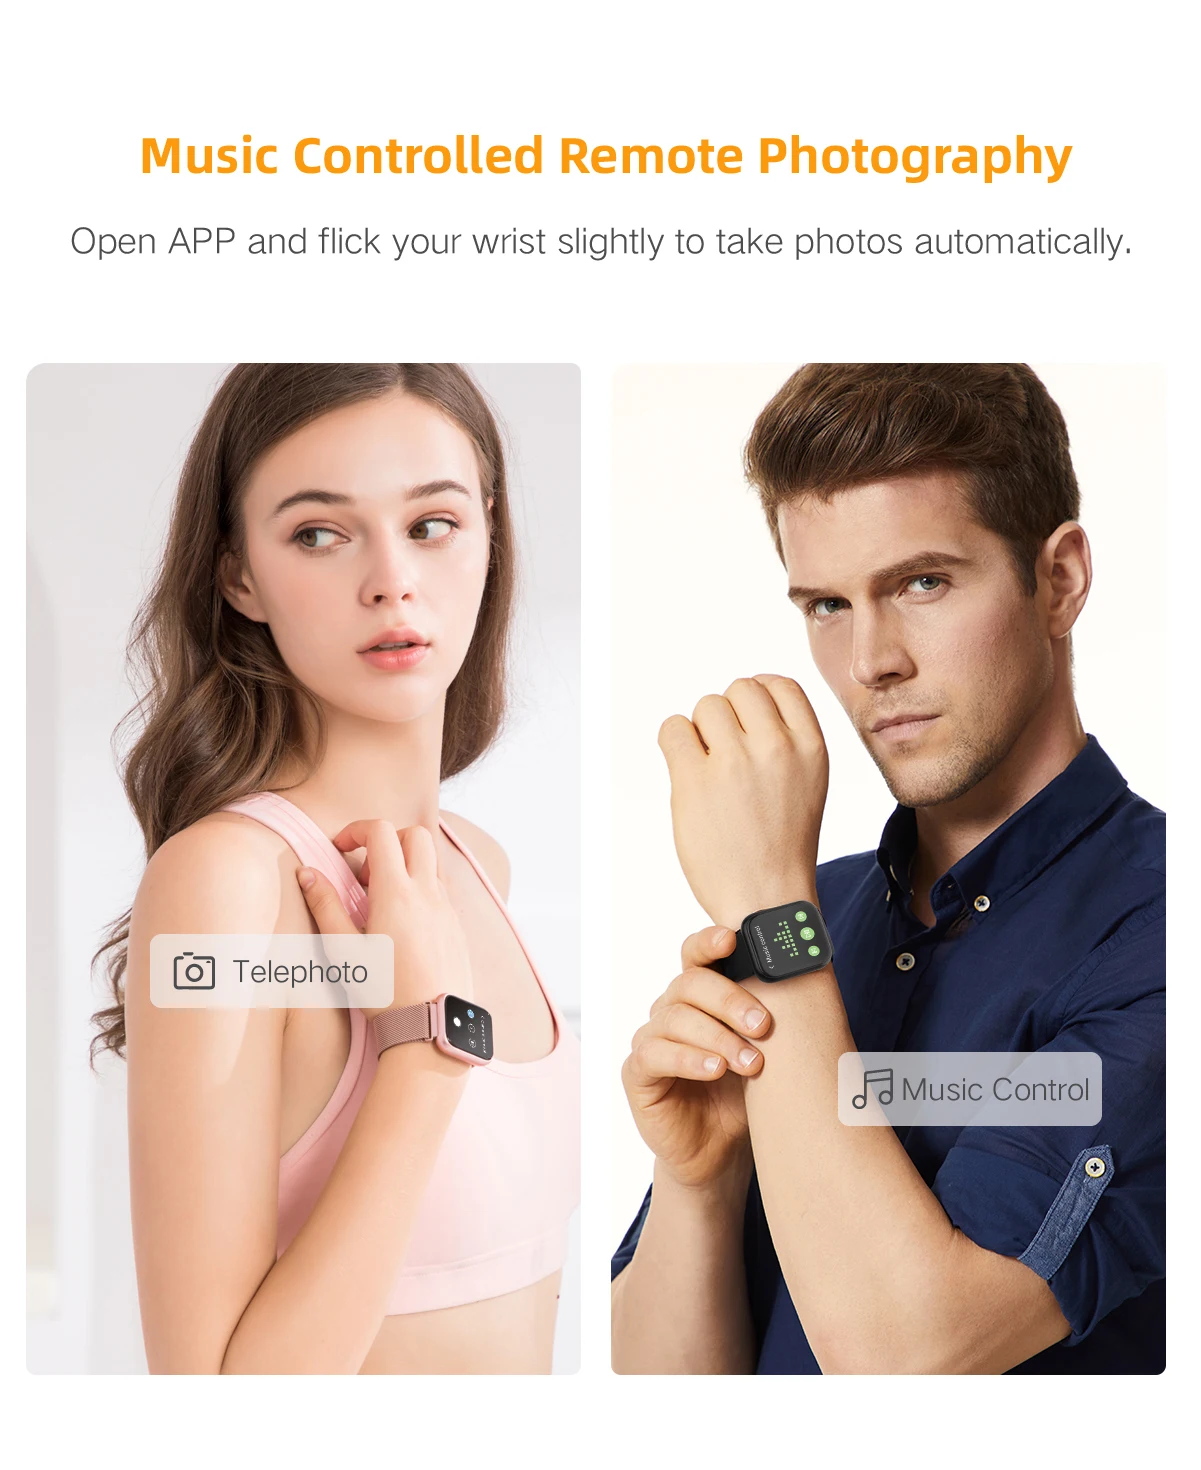 P80 Bluetooth Смарт-часы Полный Сенсорный экран сердечного ритма напоминание Ip68 Водонепроницаемый Смарт-часы для Apple Xiaomi samsung чехол для телефона